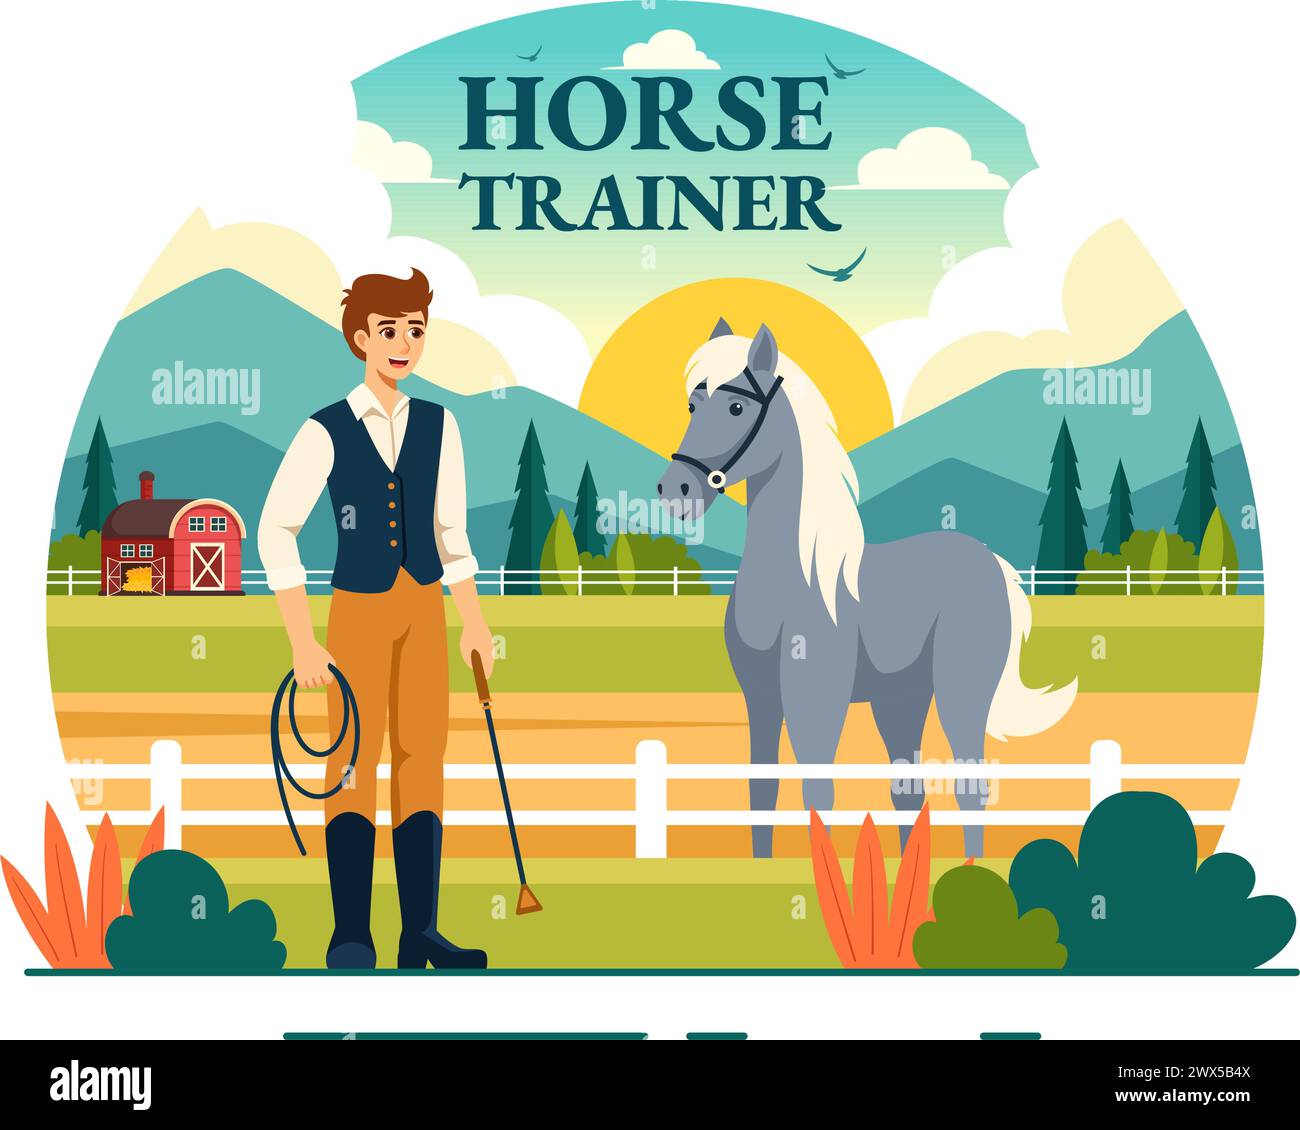 Equestrian Sport Horse Trainer illustration vectorielle avec formation, leçons d'équitation et chevaux de course dans Flat Cartoon fond Design Illustration de Vecteur